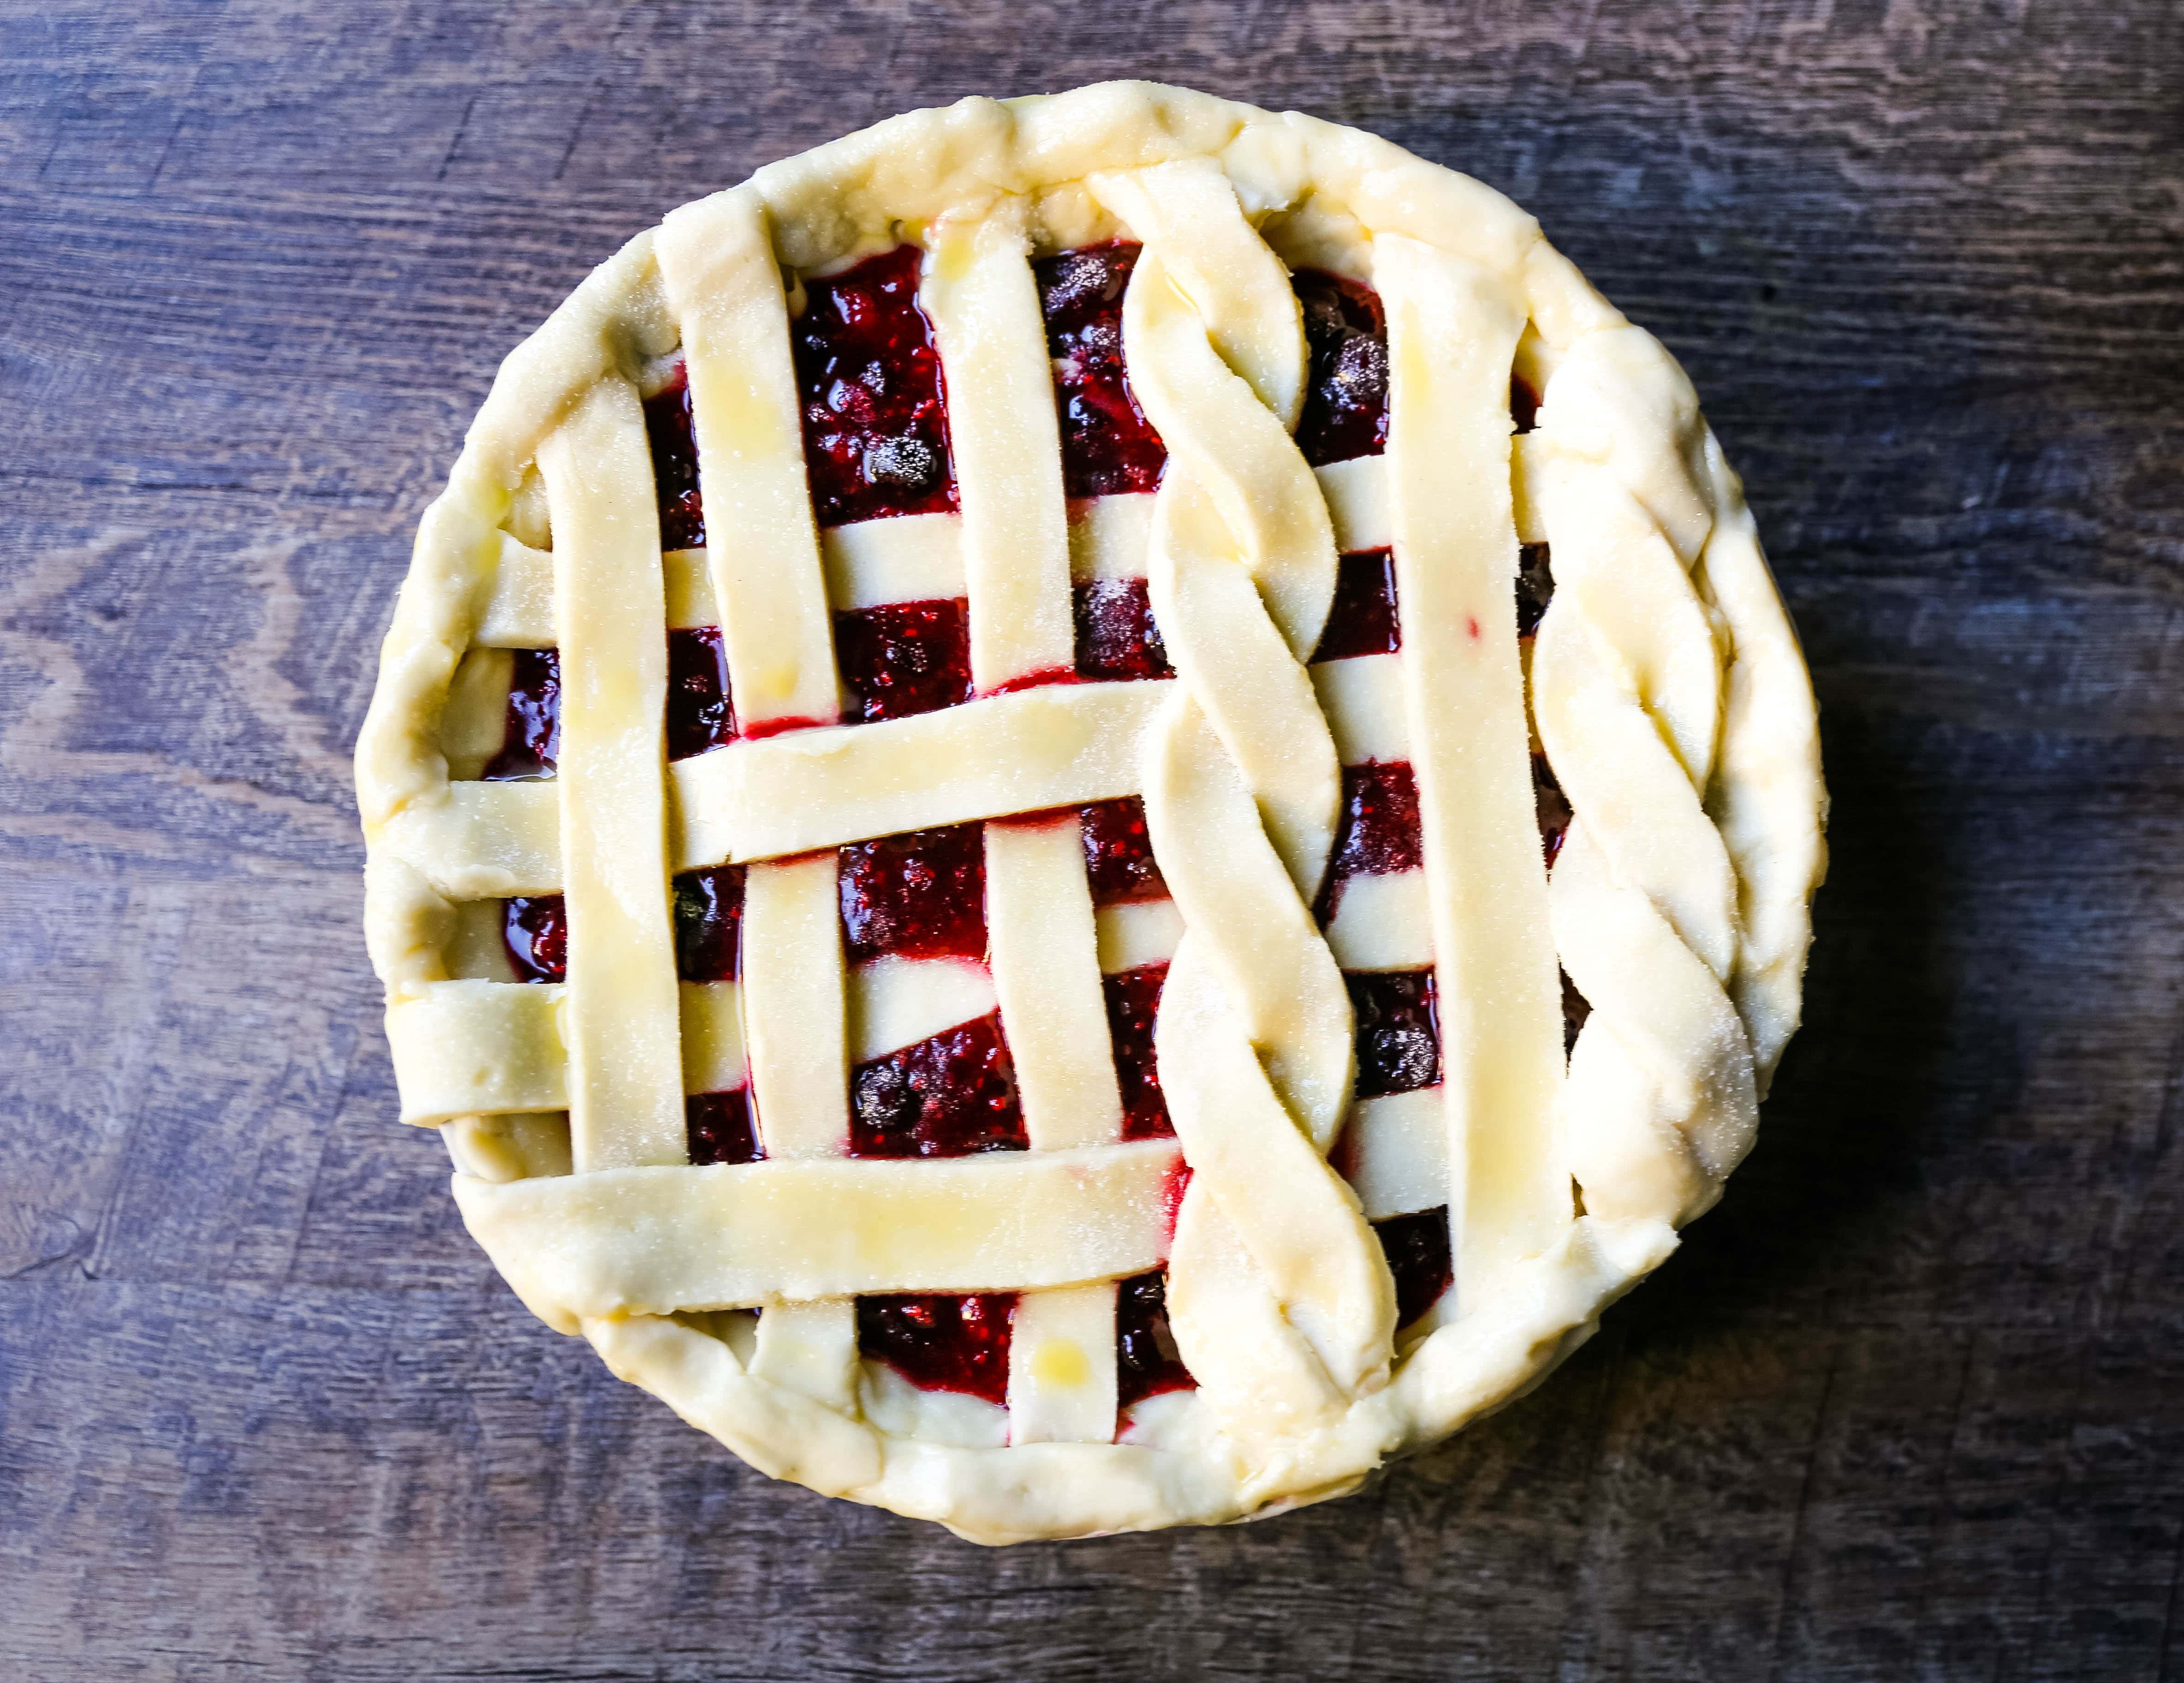 Triple Berry Pie. Najlepszy domowy przepis na ciasto jagodowe z maślaną skórką. Dodaj do niego lody waniliowe i masz idealny deser jagodowy! Najlepszy przepis na ciasto z jagodami. www.modernhoney.com #berrypie #pie #berries #tripleberrypie #thanksgiving